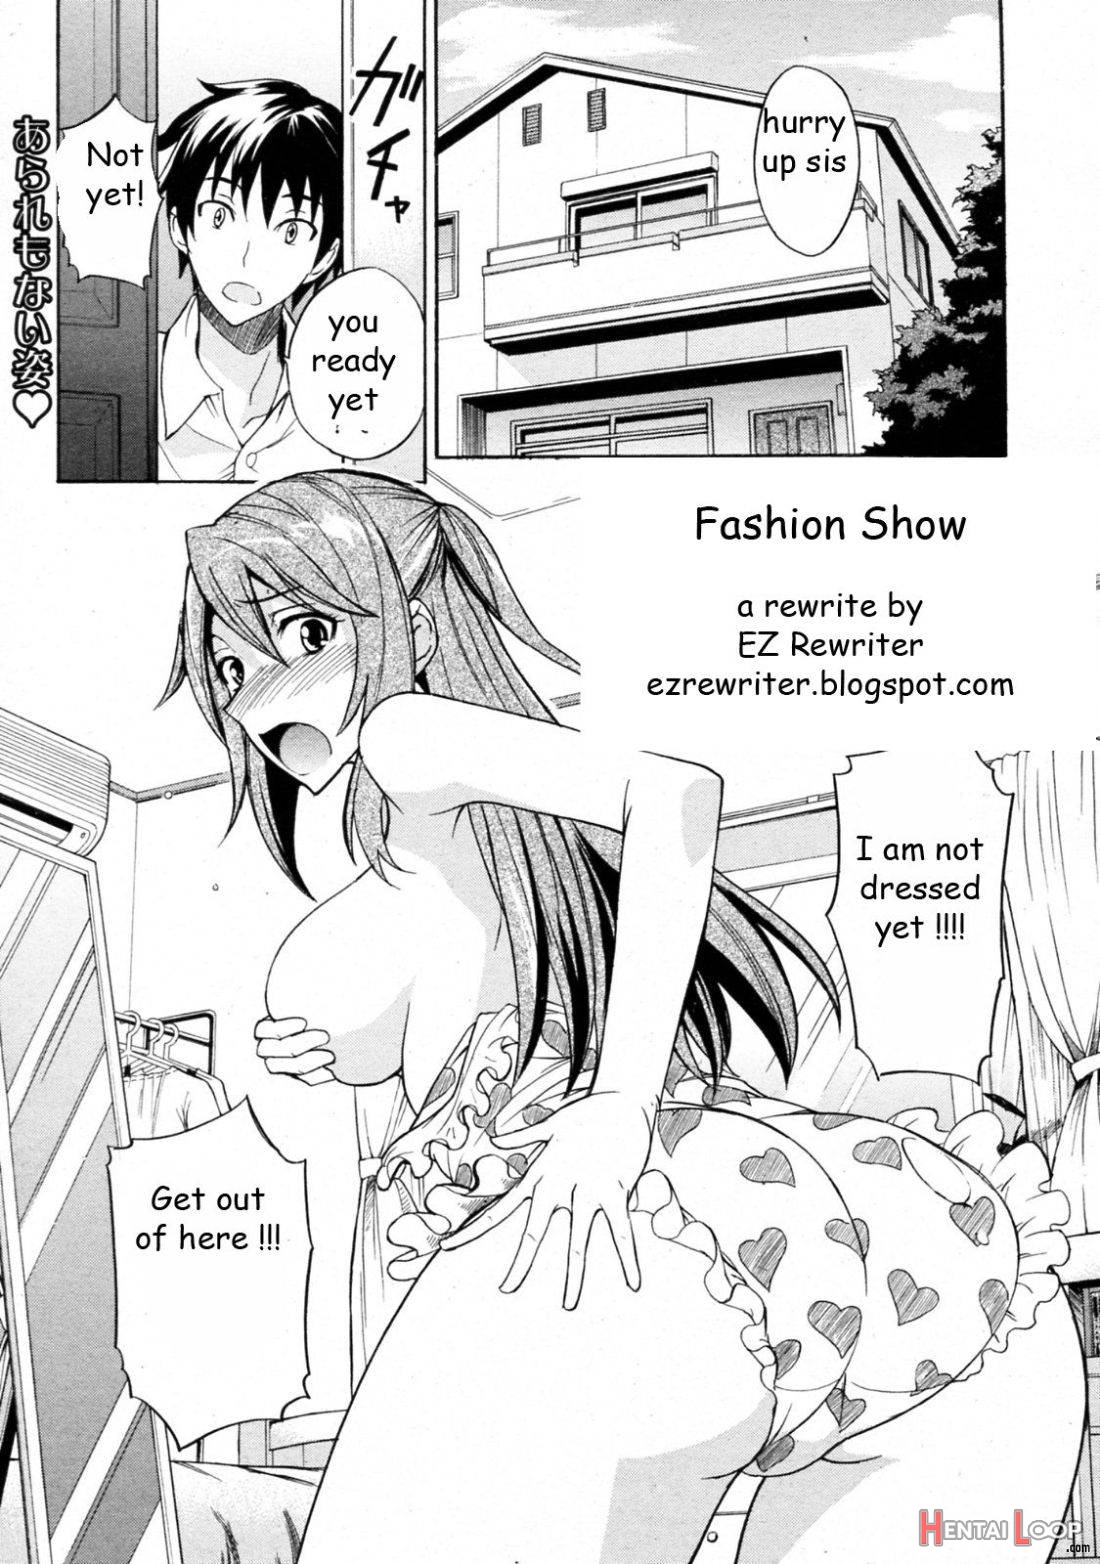 Fashion Show page 1